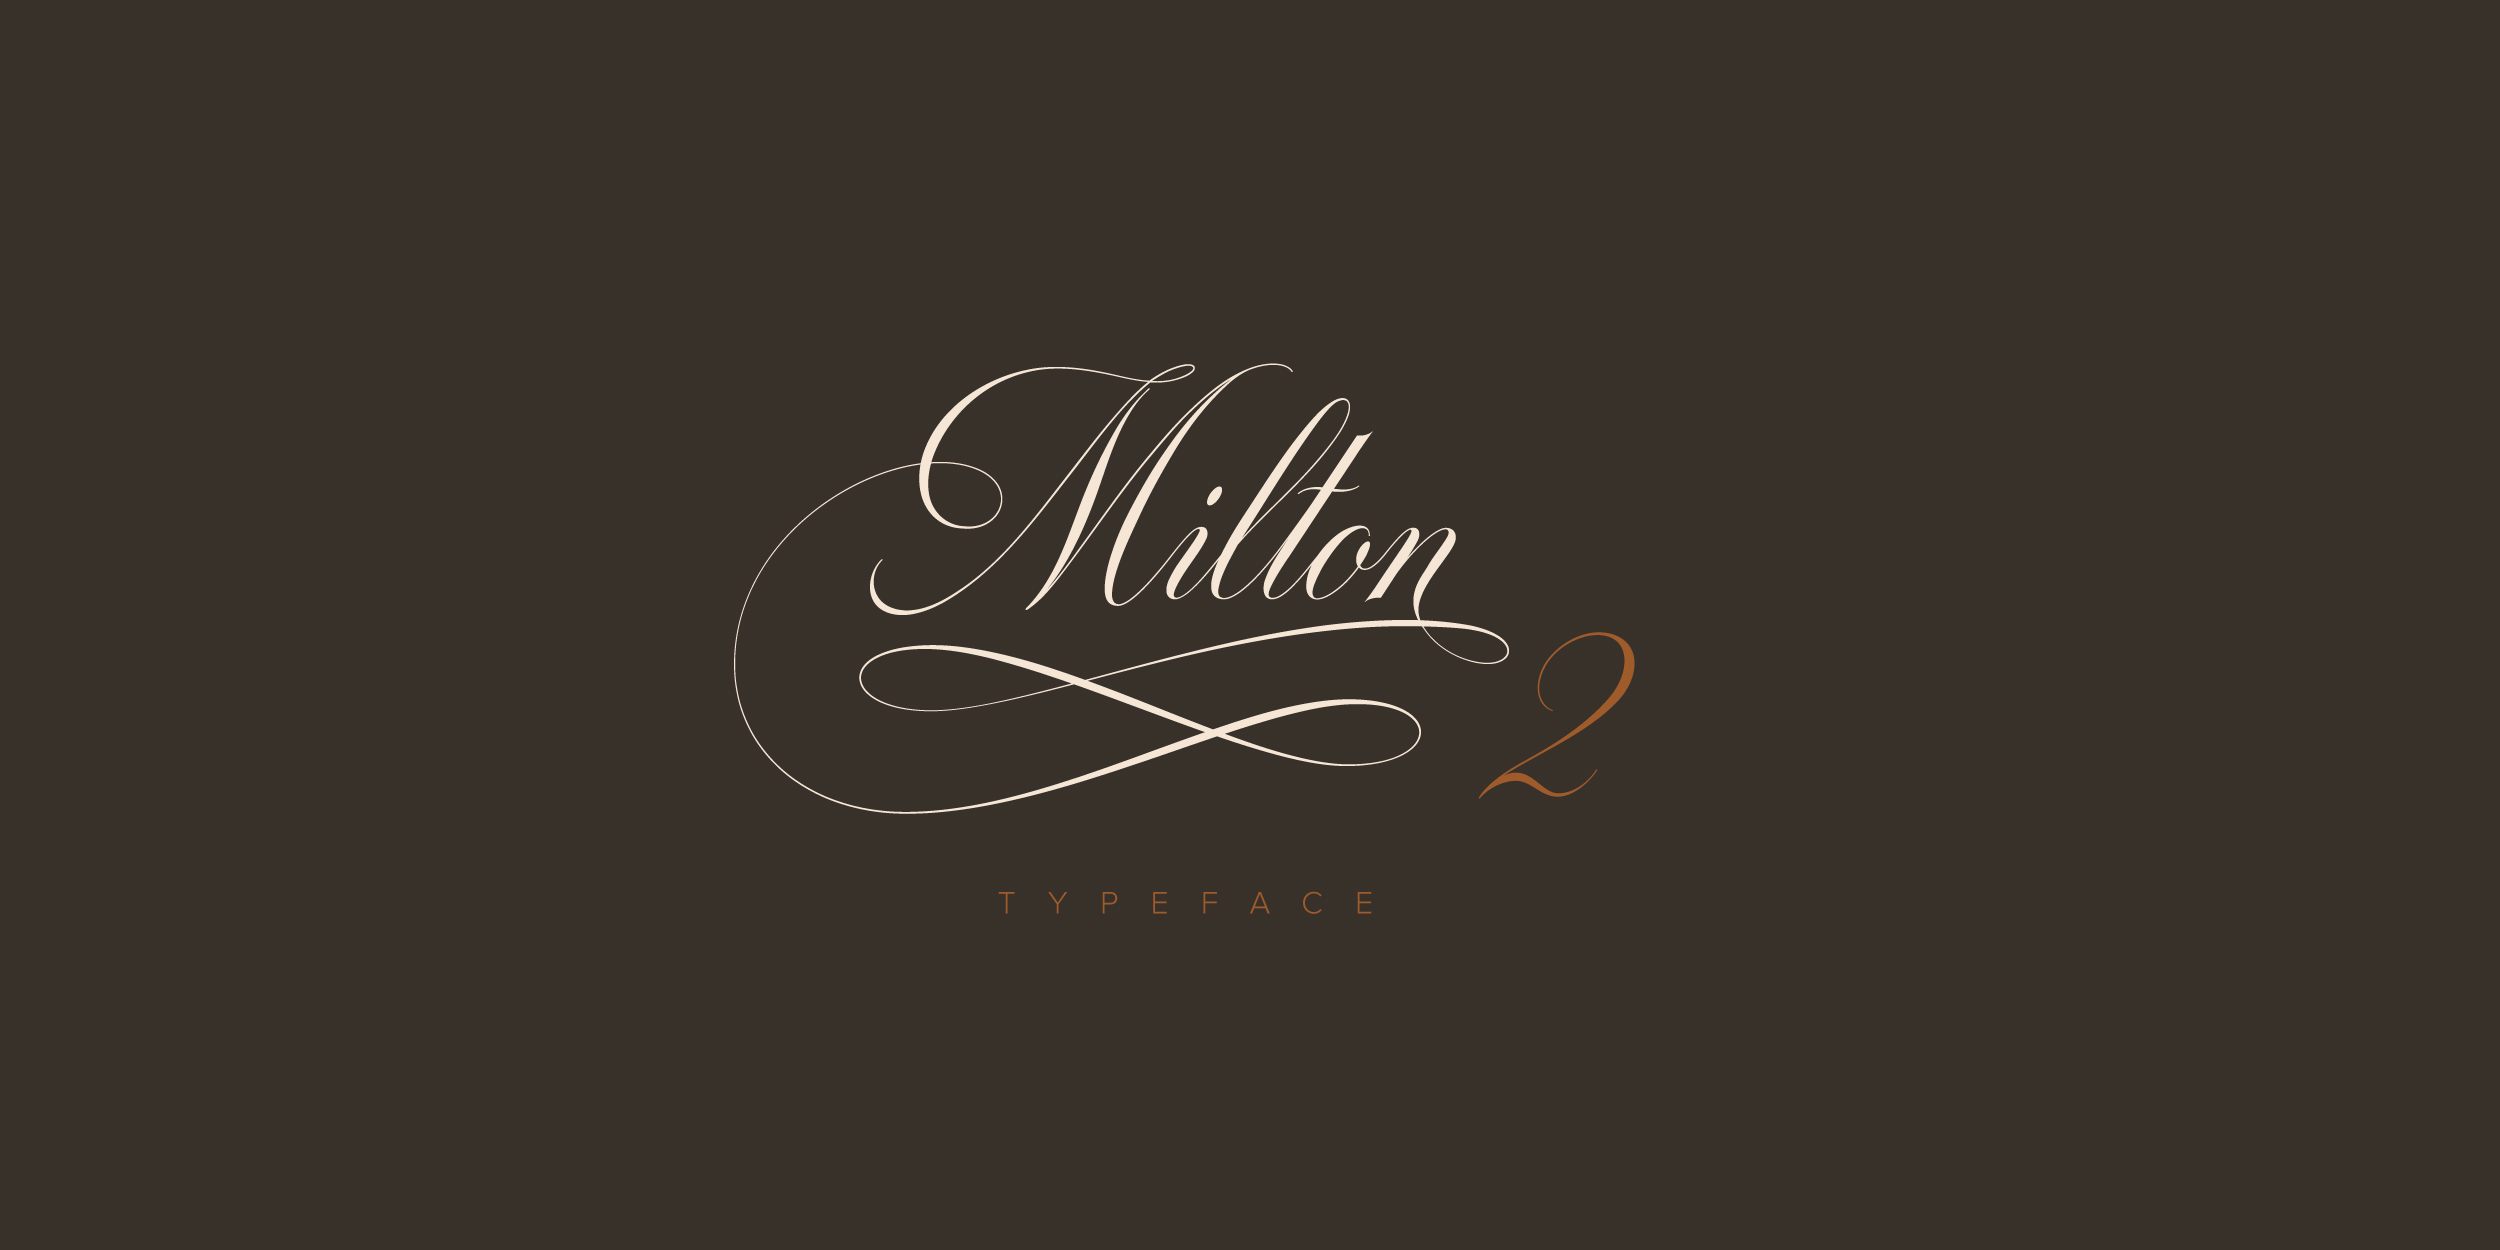 Milton Two